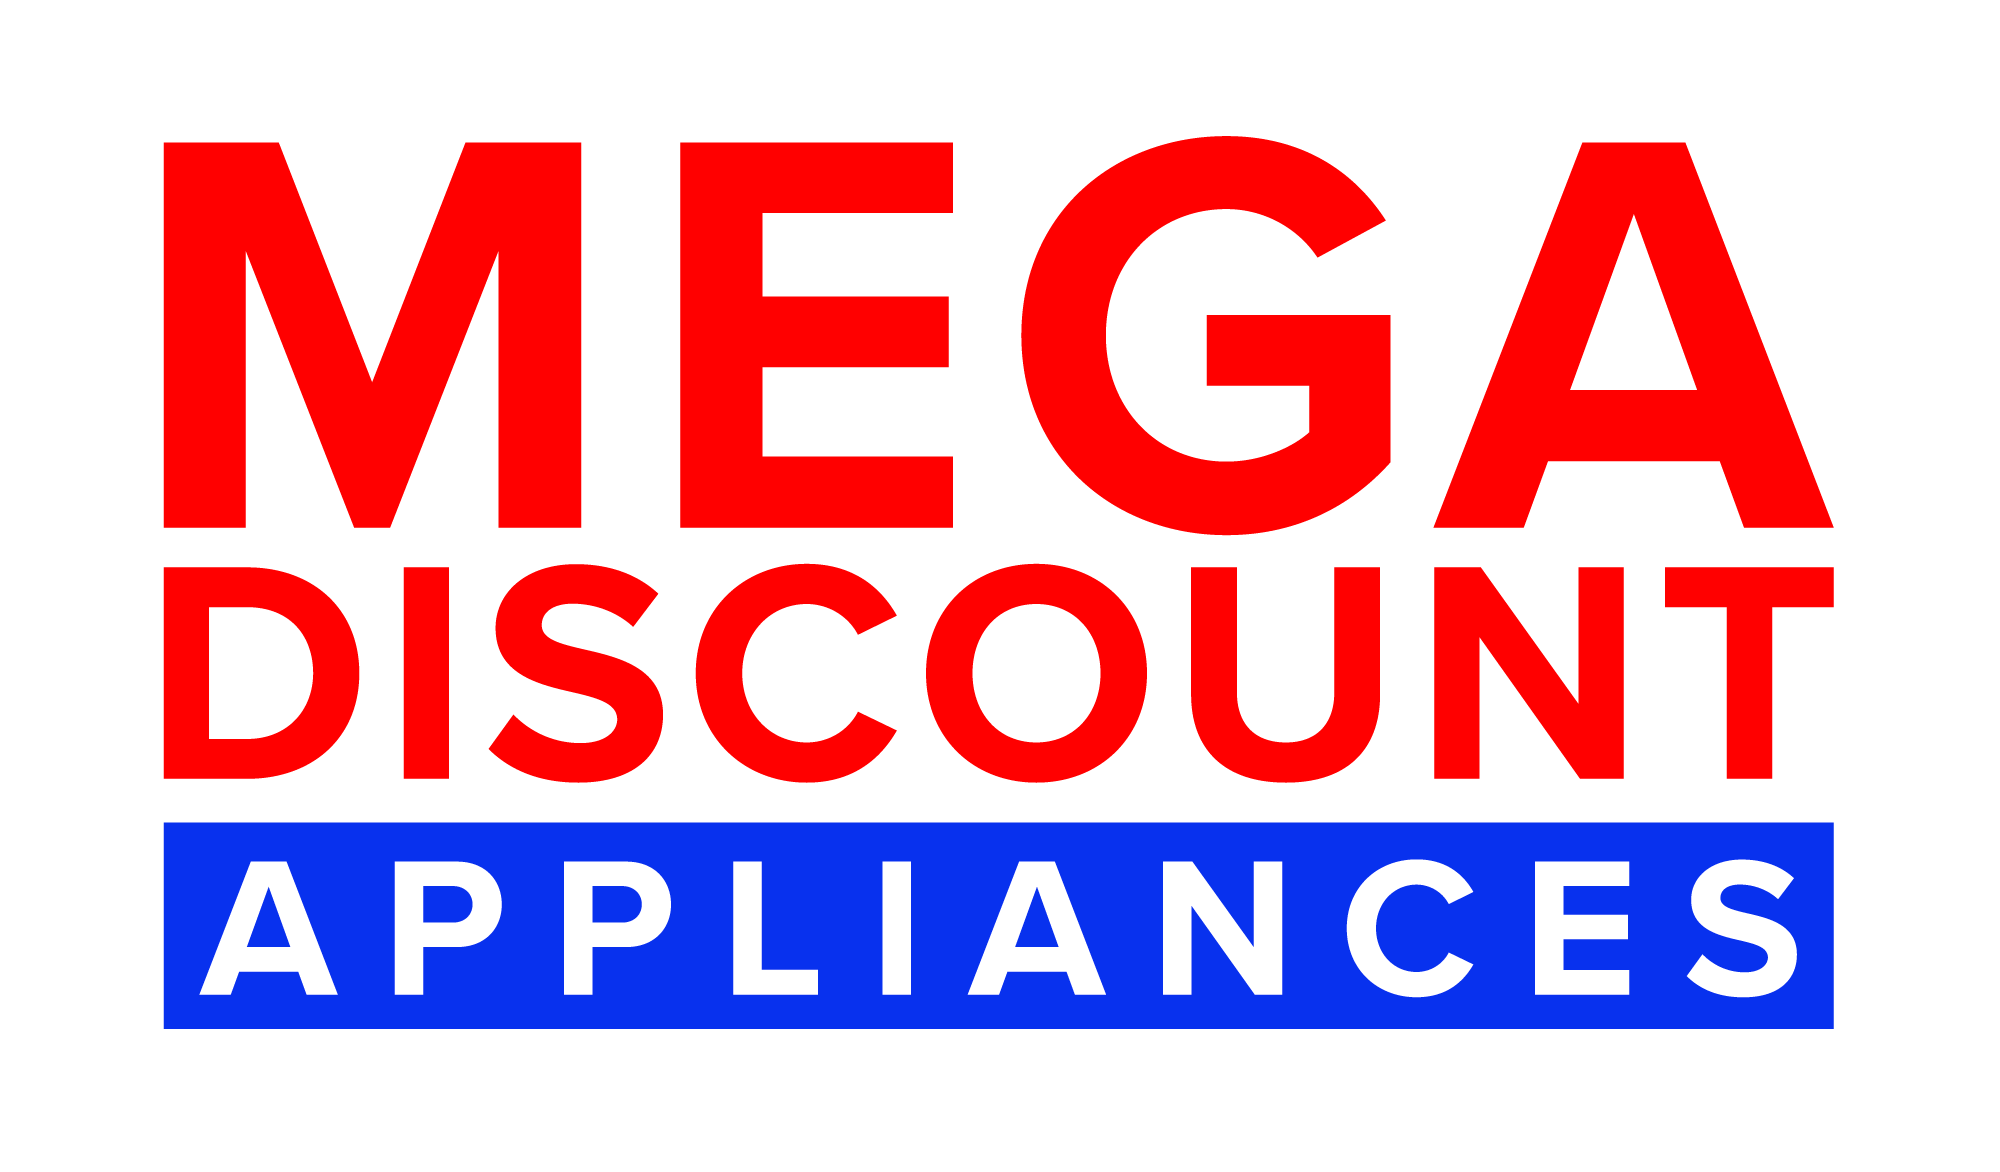 Mega Discout Appliances